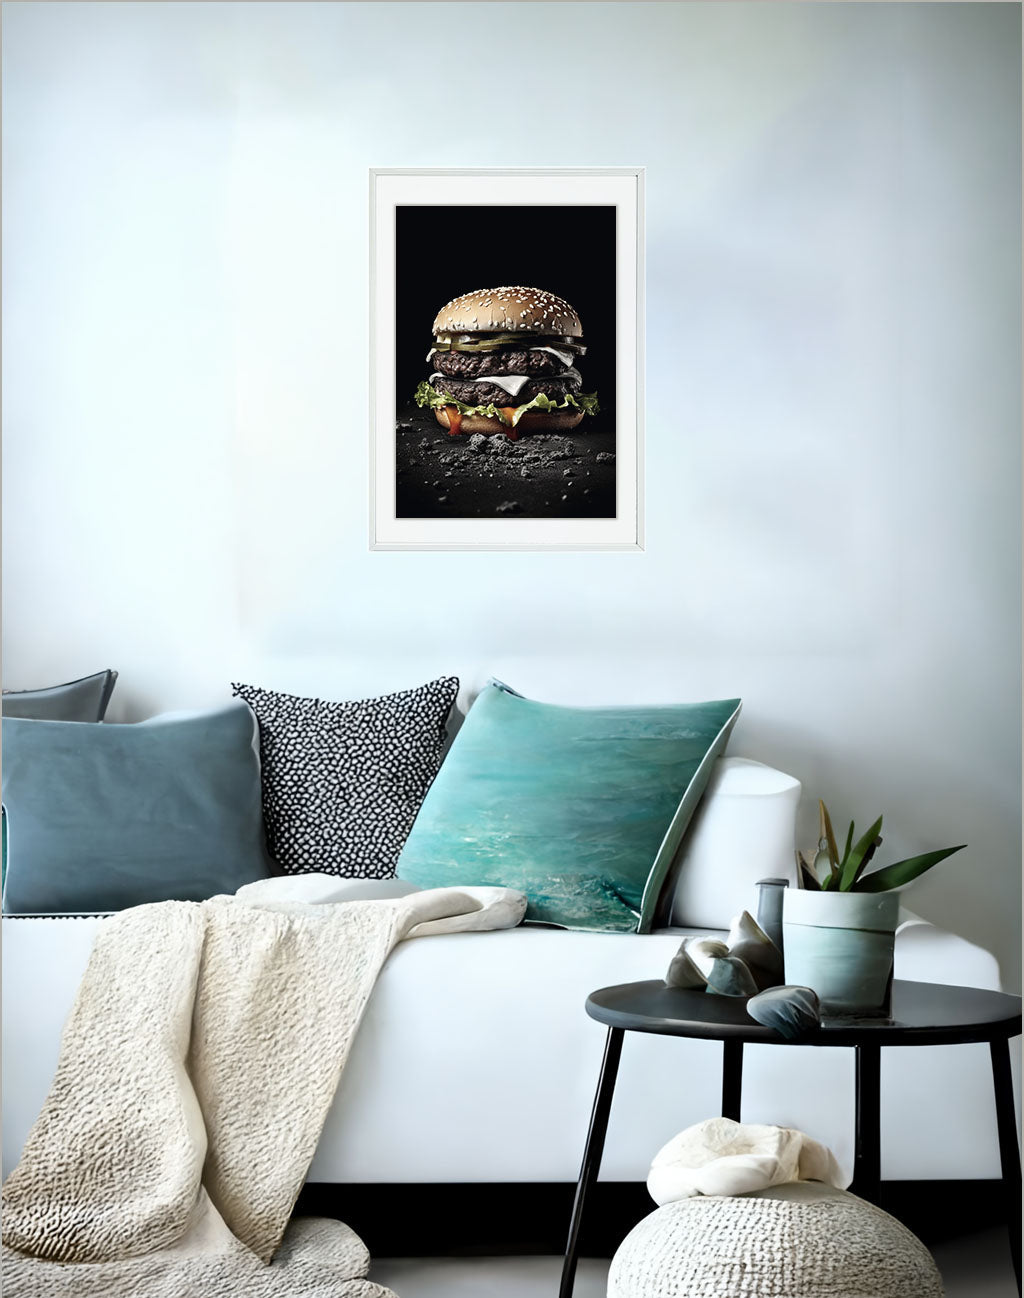 ハンバーガーのアートポスターソファ配置イメージ